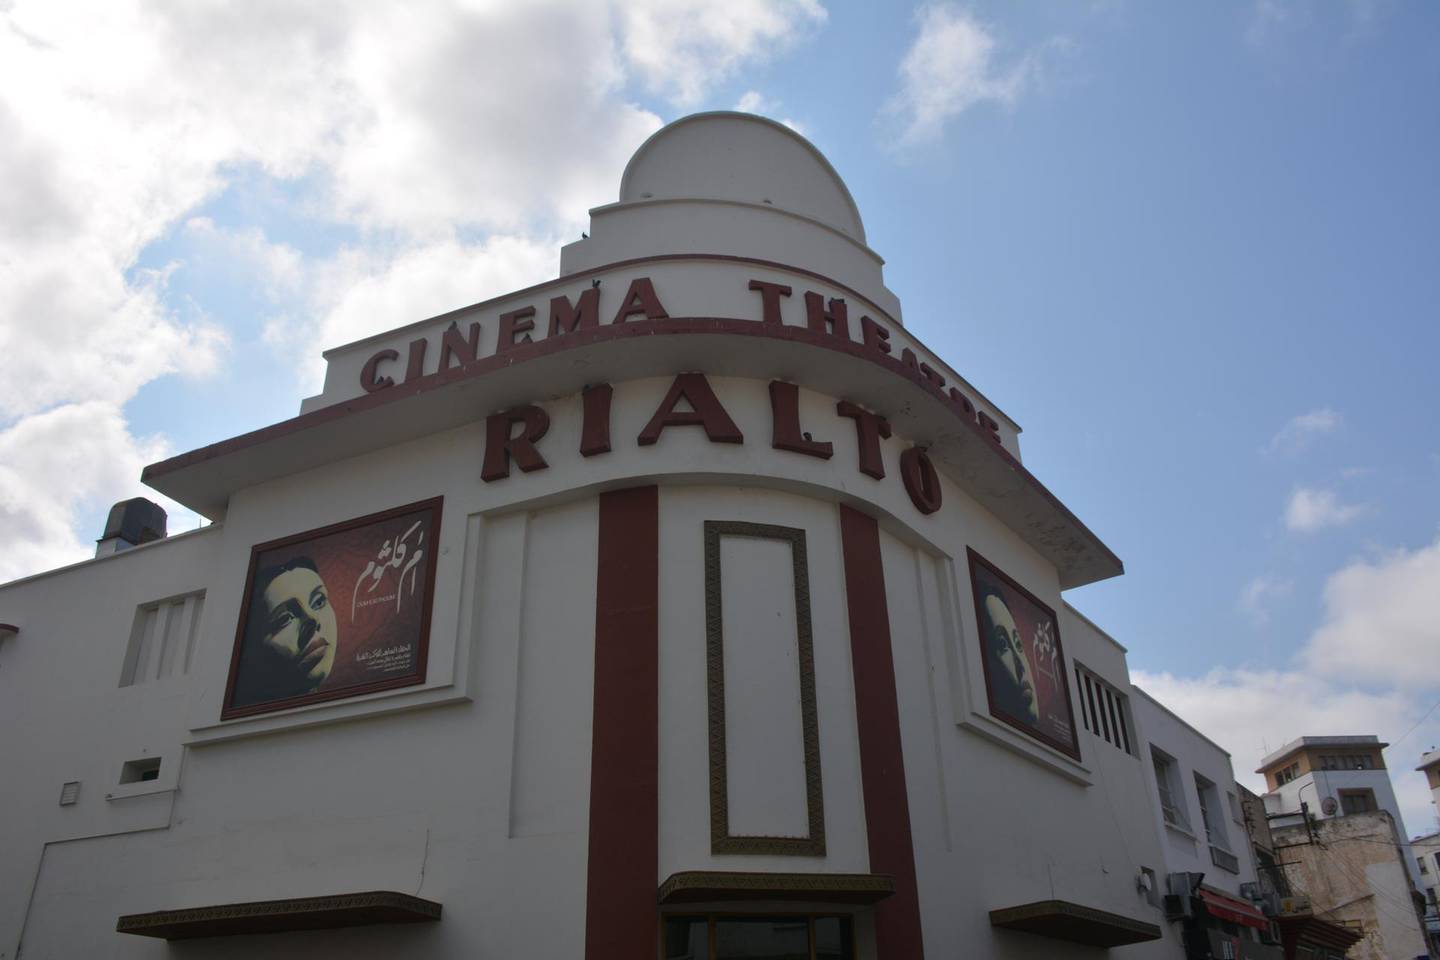 The art deco Rialto cinema in Casablanca, Morocco.